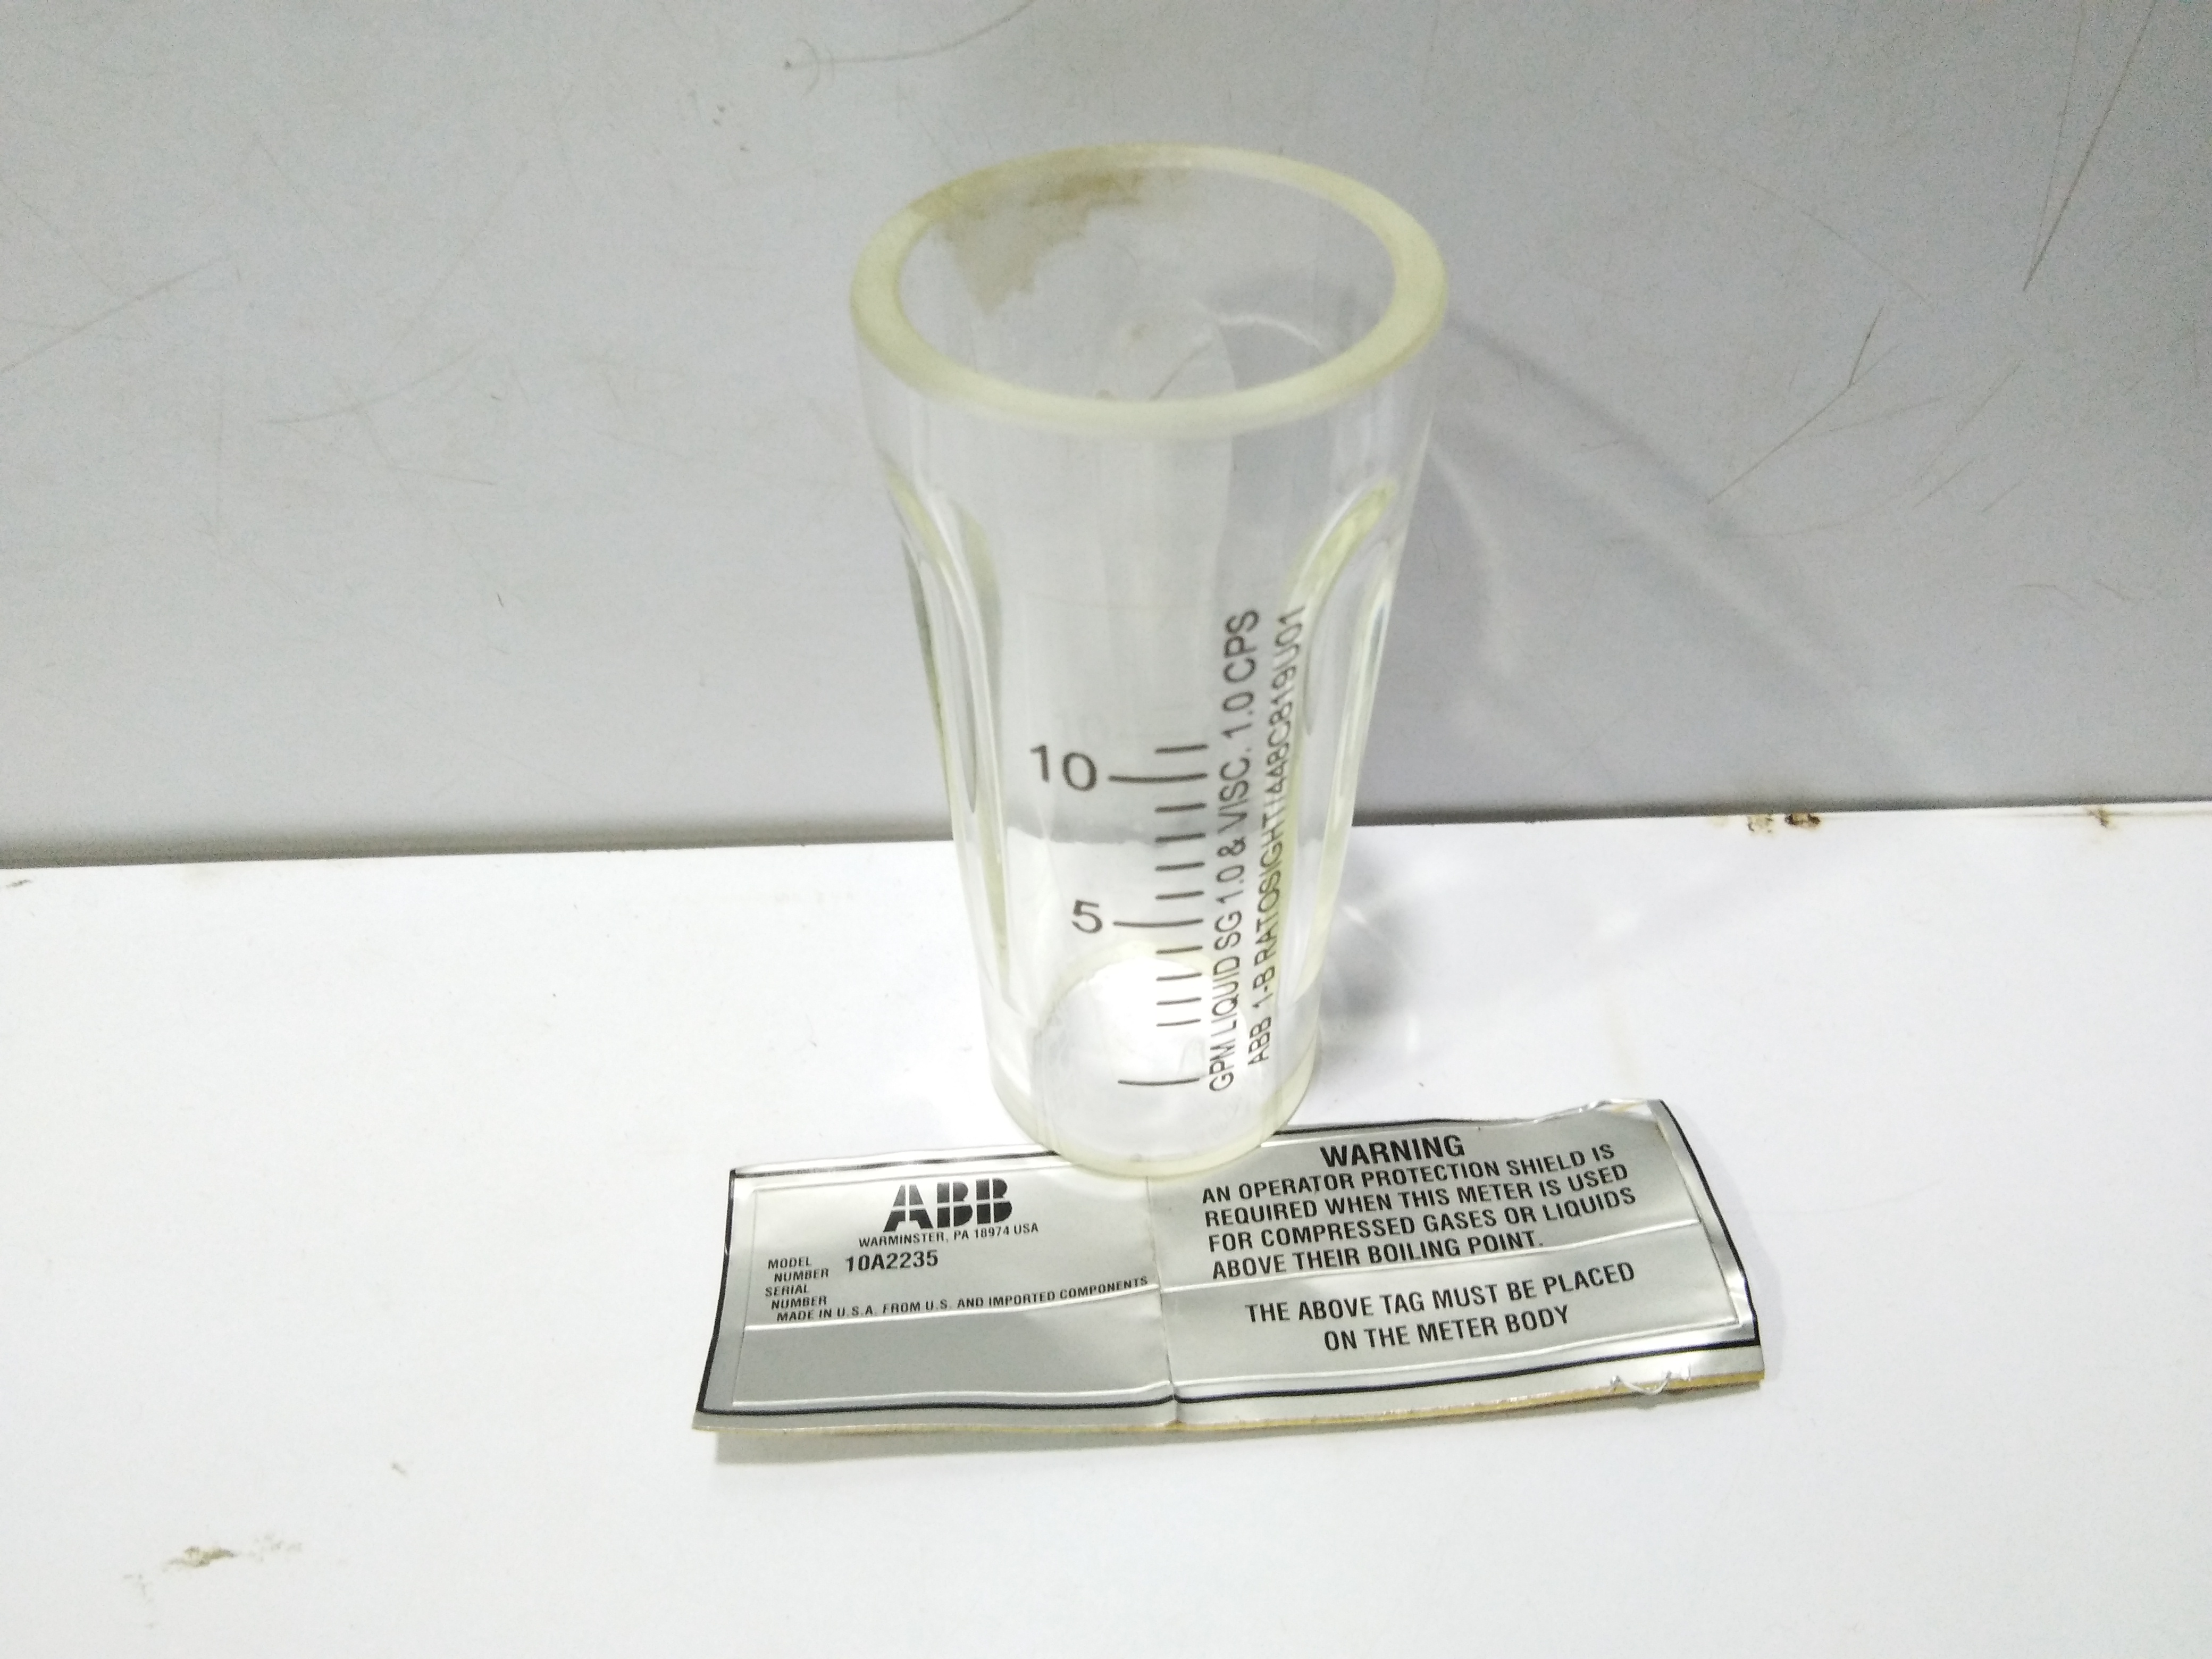 ABB 1-B RATOSIGHT_448C819U01 10A2235 LIQUID INDICATOR GLASS